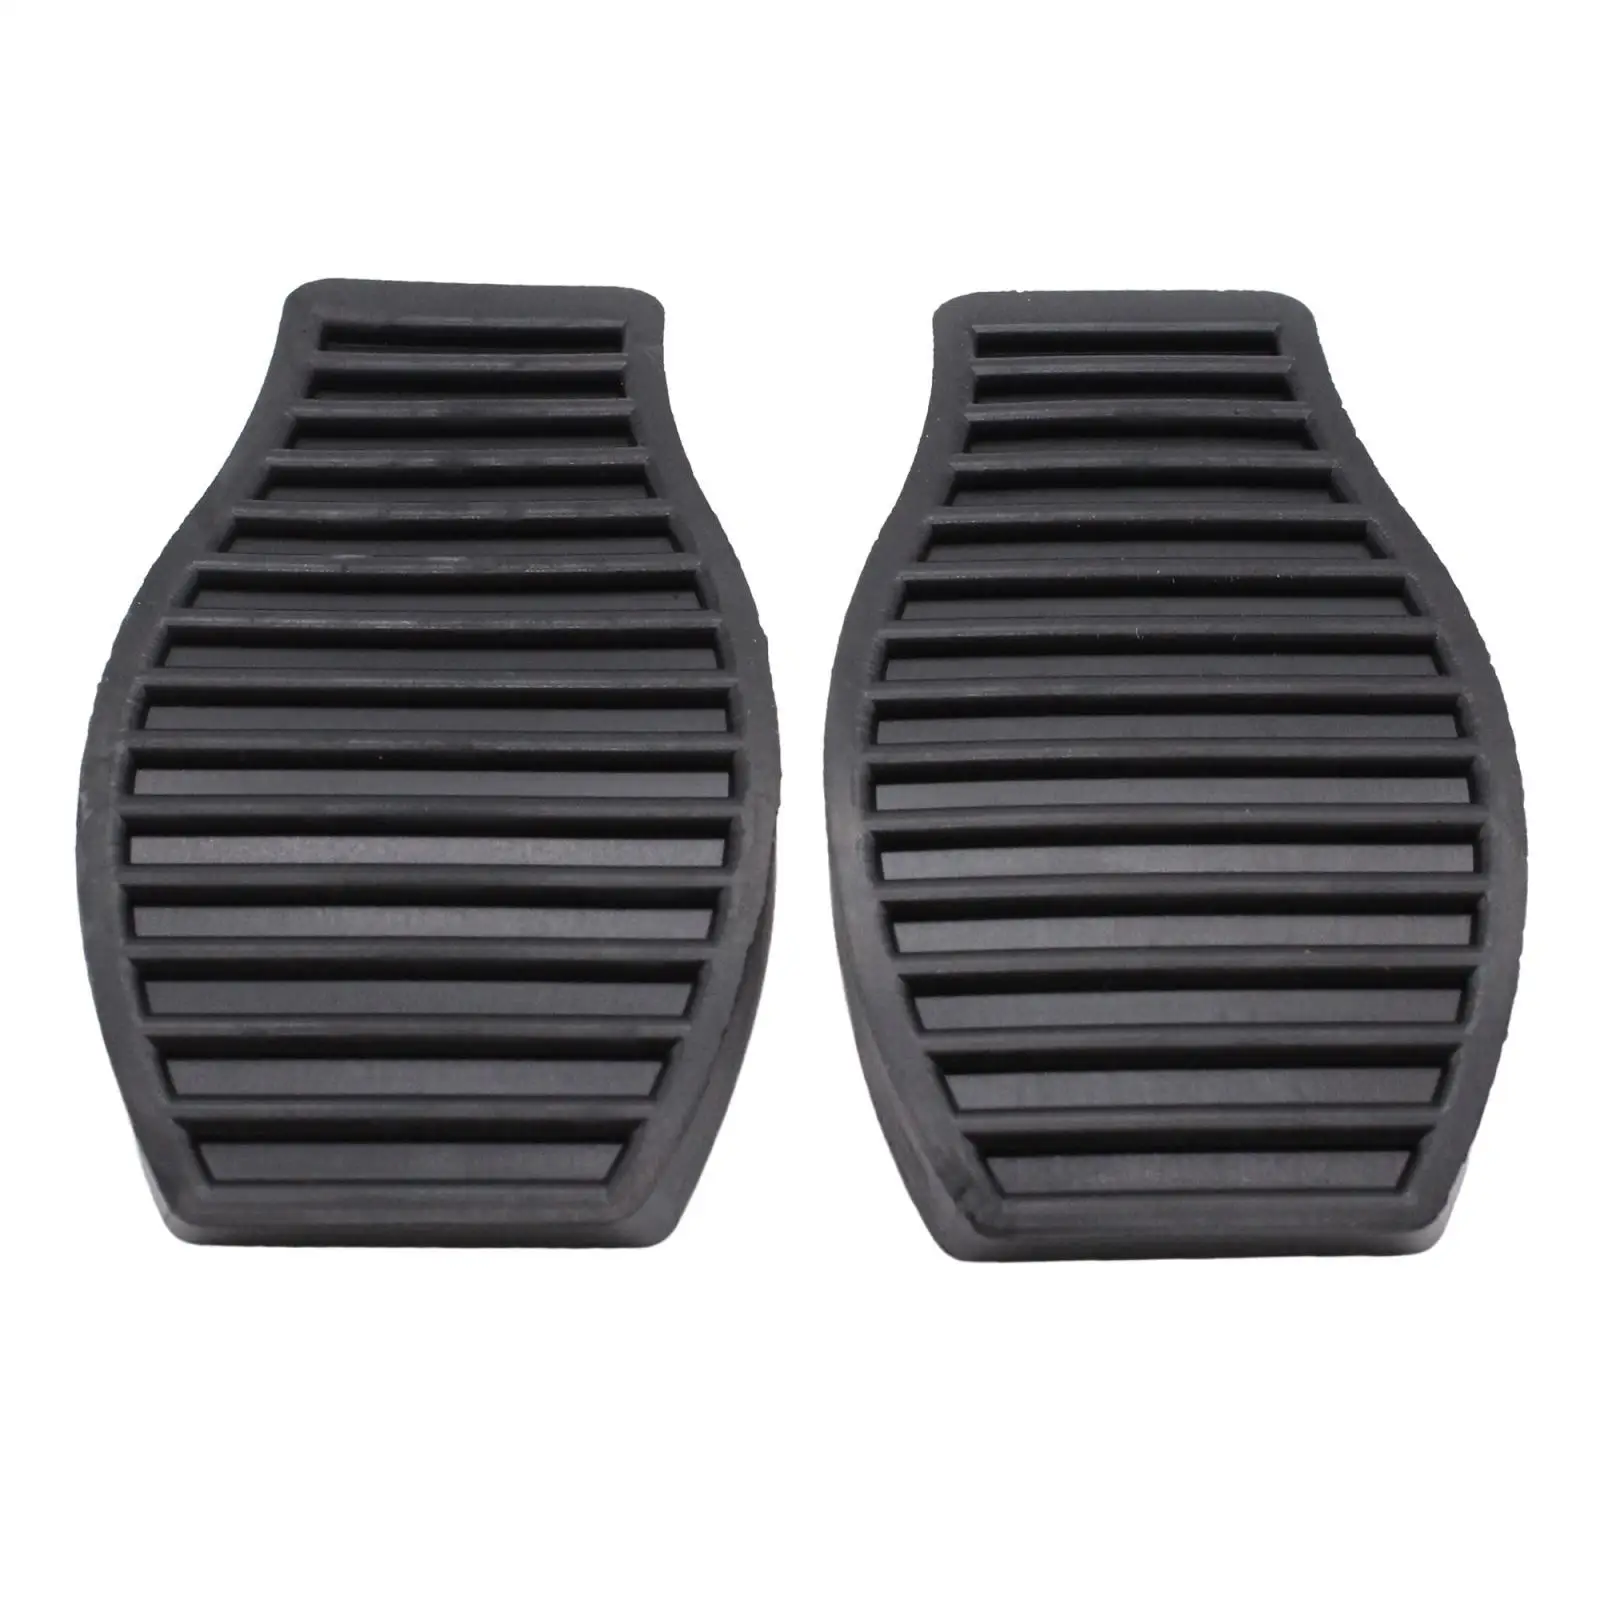 2x Automotive Brake Pedal Pads 71746348 4504.36 for Alfa Romeo Mito Accessories